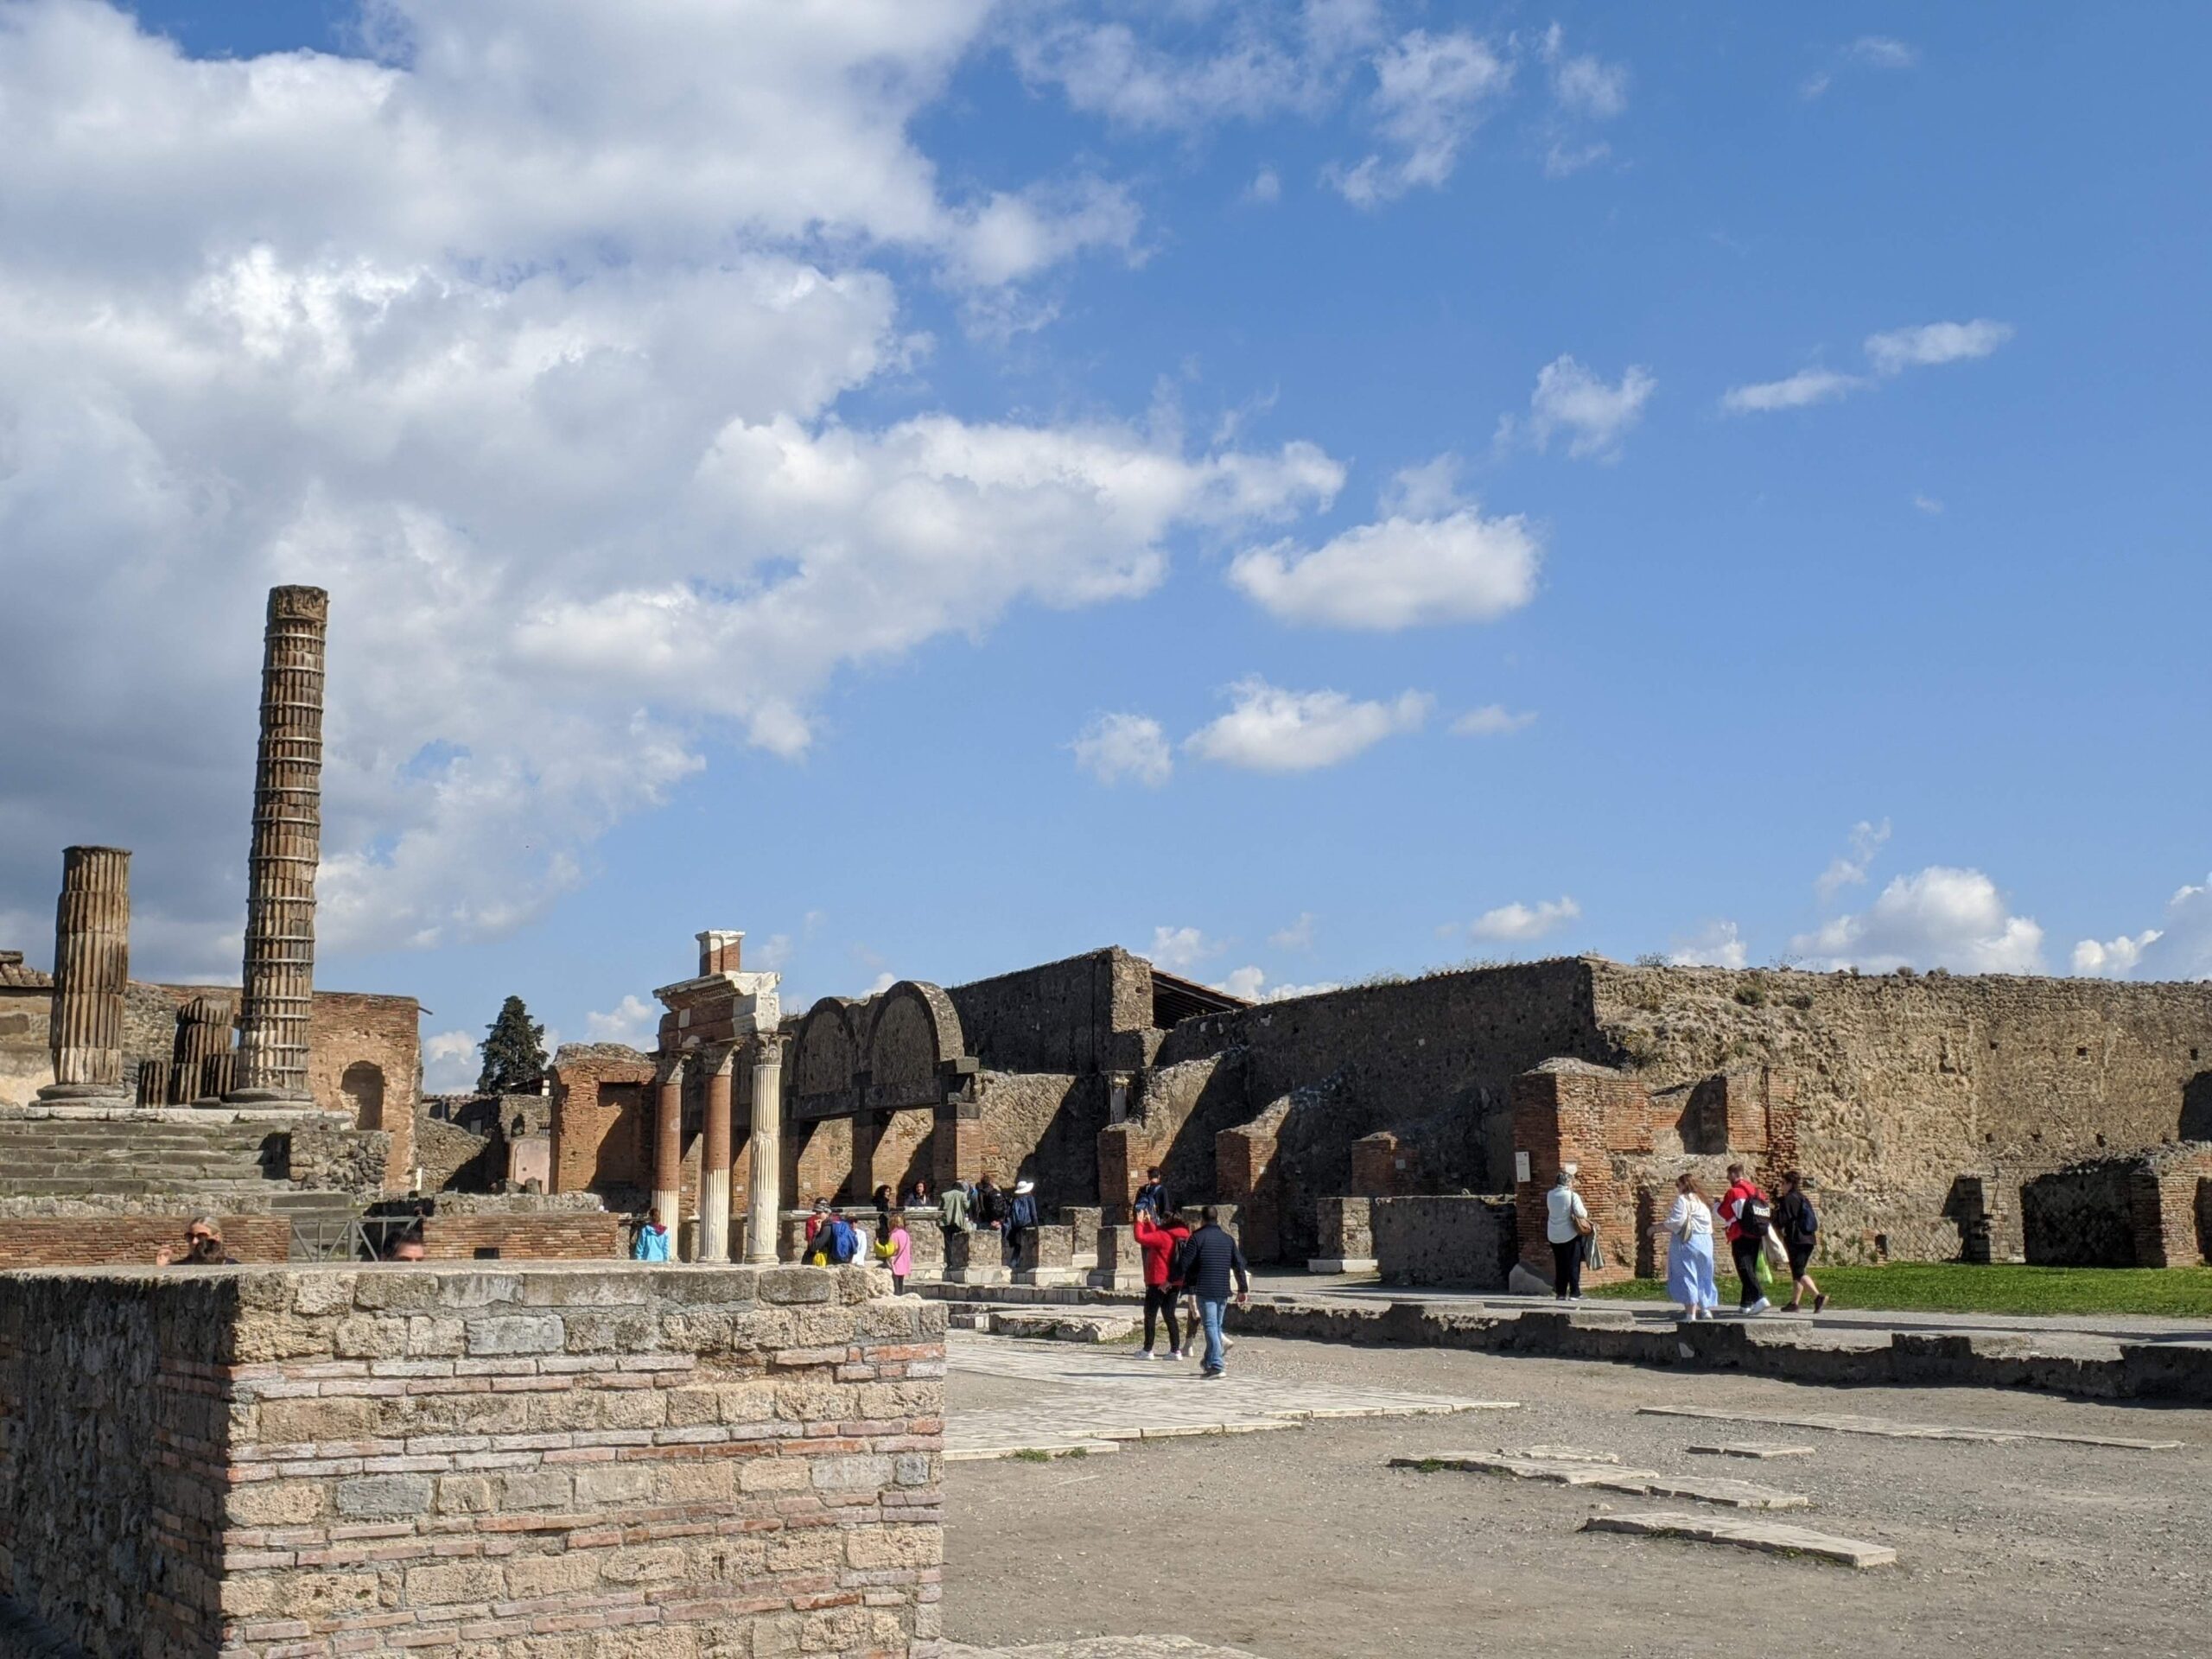 Foto de diversas ruínas de casos e palácios feitas de pedra, é possível ver pessoas andando por entre elas.